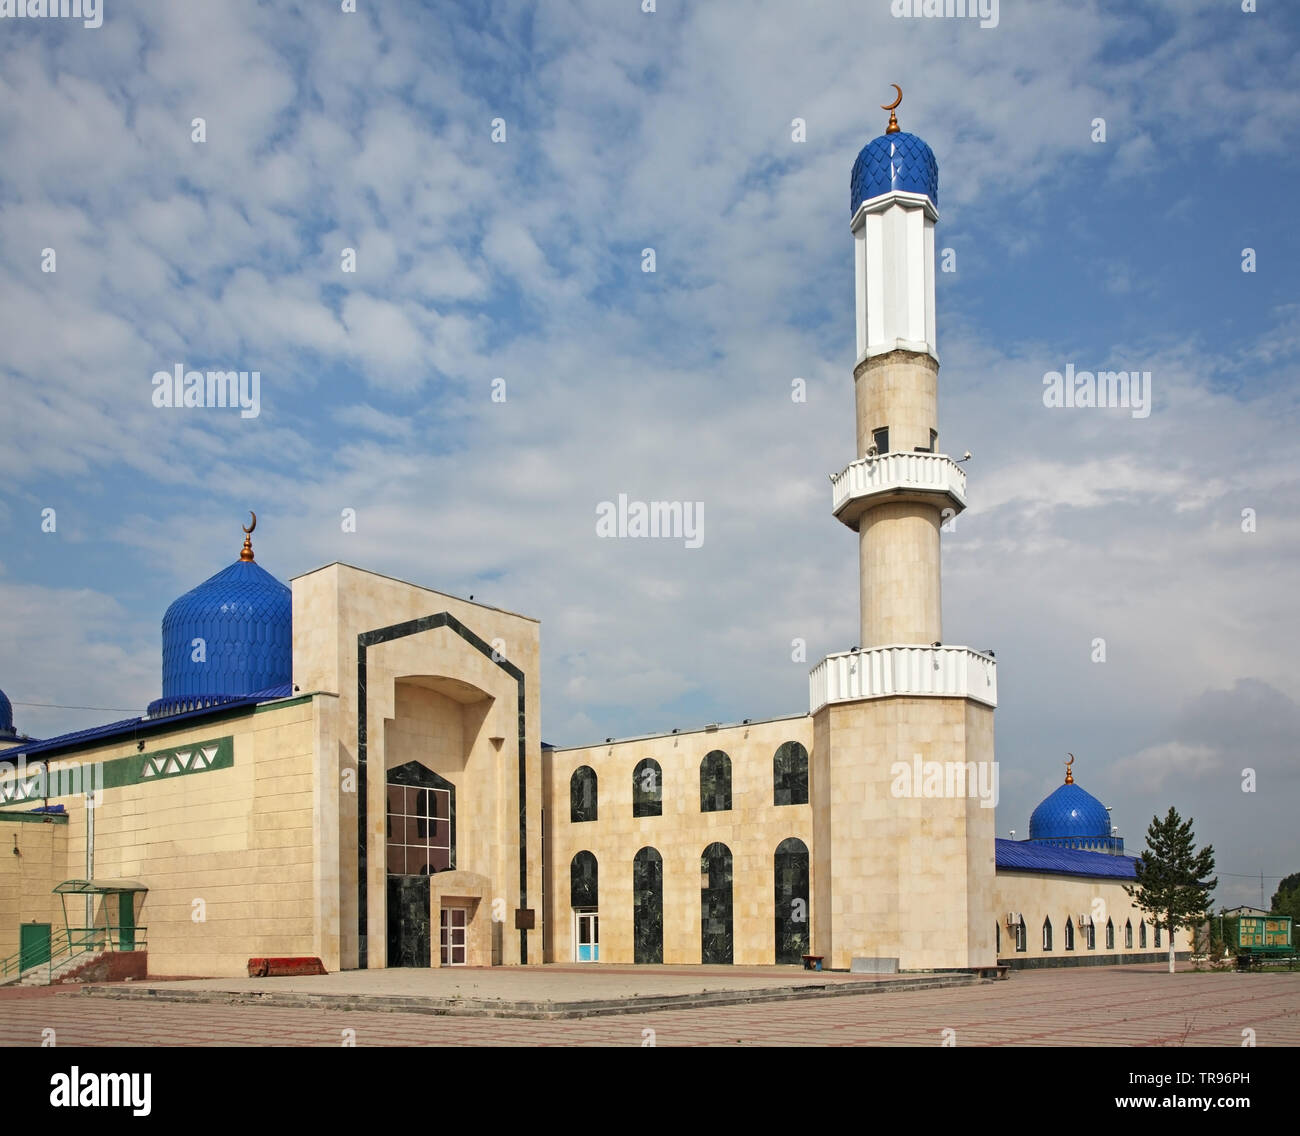 Central Mosque No. 1 in Karaganda. Kazakhstan Stock Photo